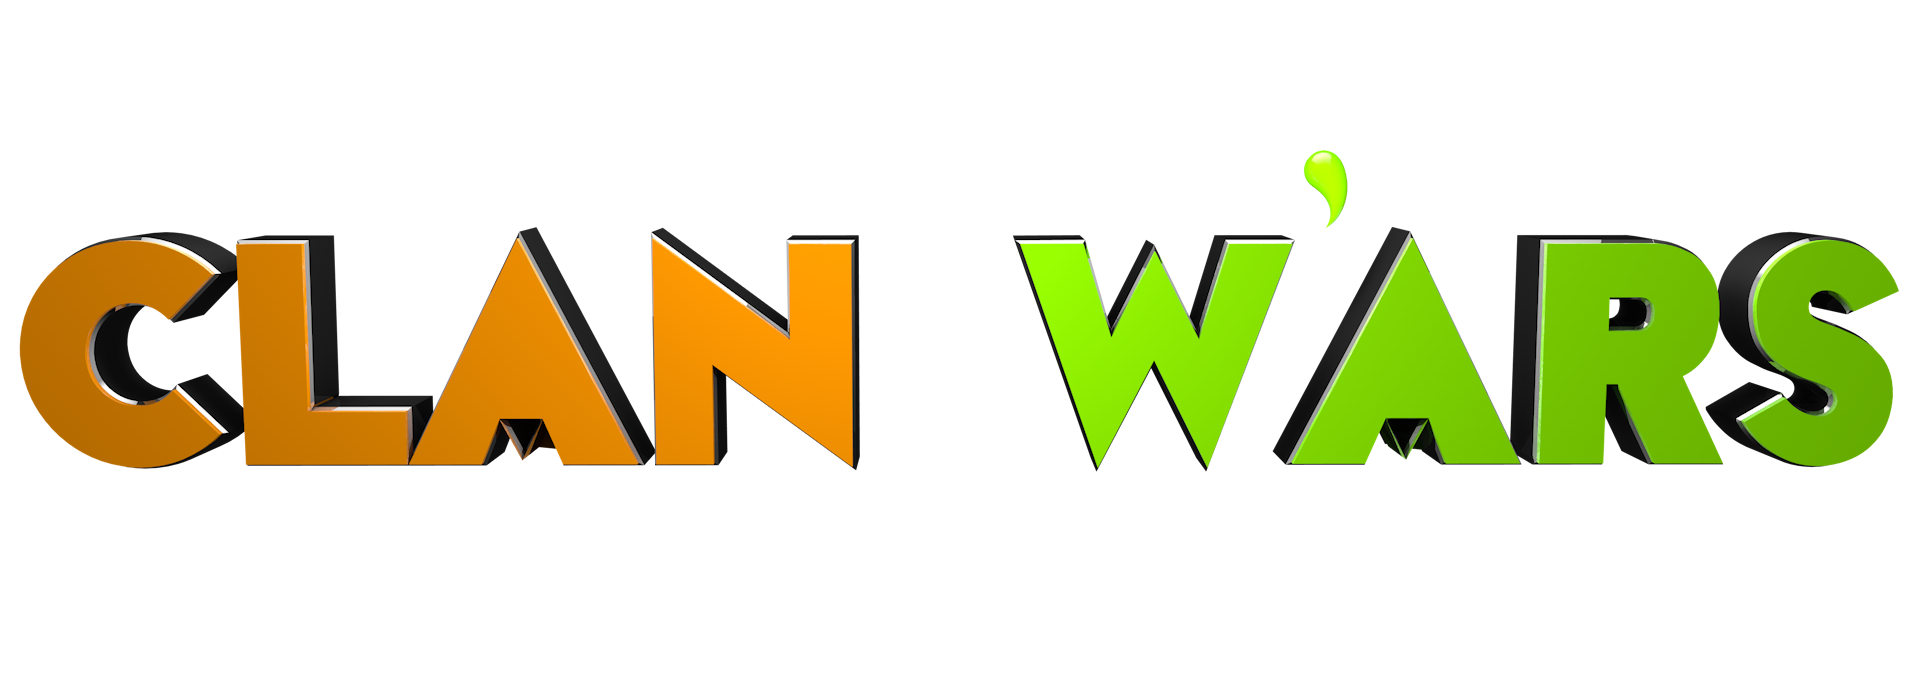 Clan Wars0008.png